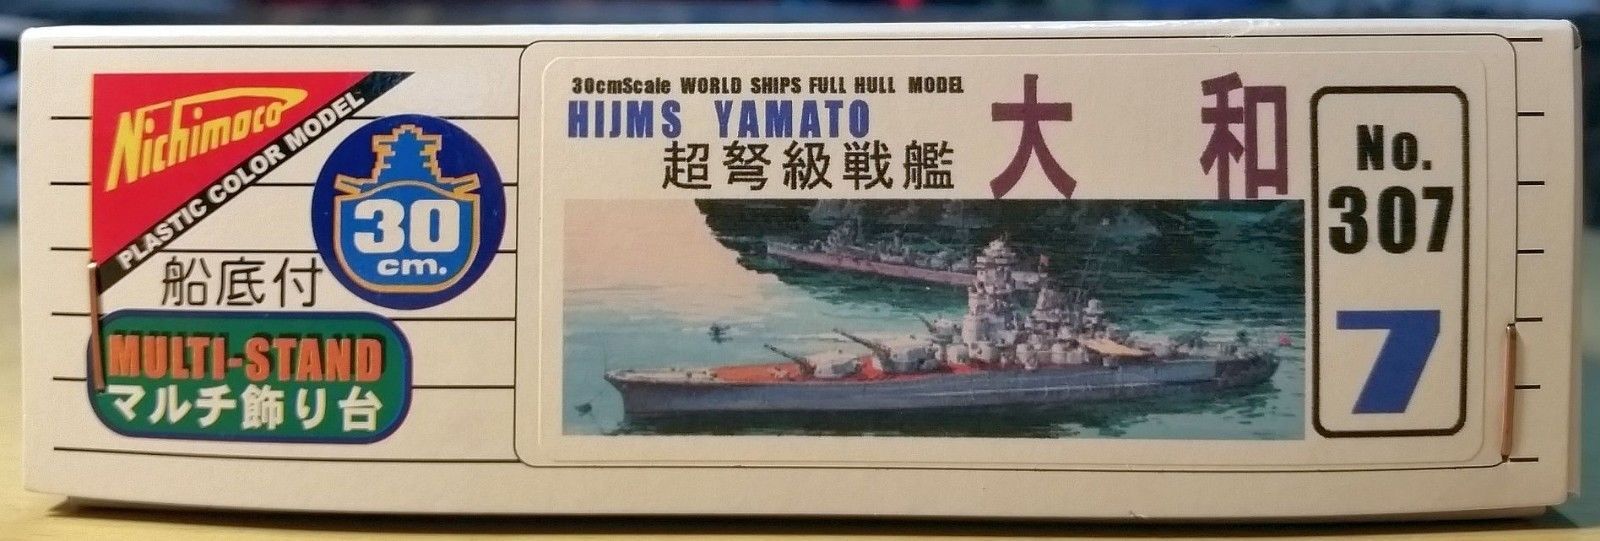 Primary image for Nichimo IJN Battleship YAMATO - 30 cm Scale Kit # U-307 - Motorized